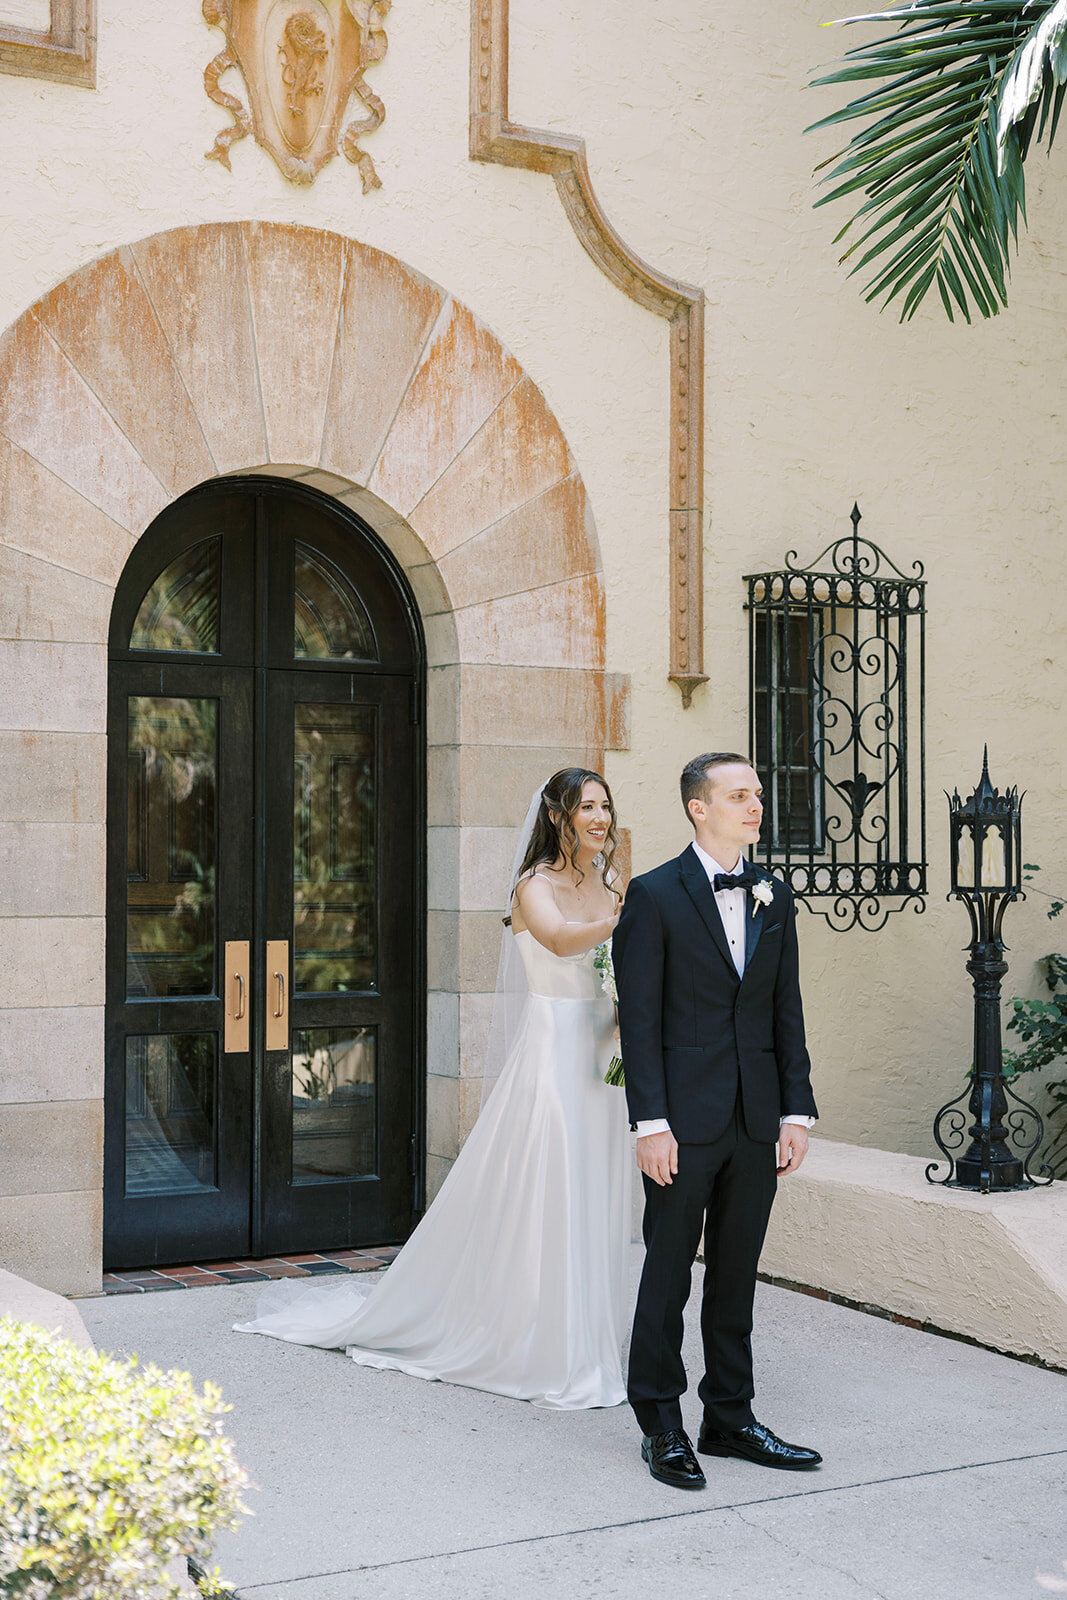 CORNELIA ZAISS PHOTOGRAPHY COURTNEY + ANDREW WEDDING 0313_websize